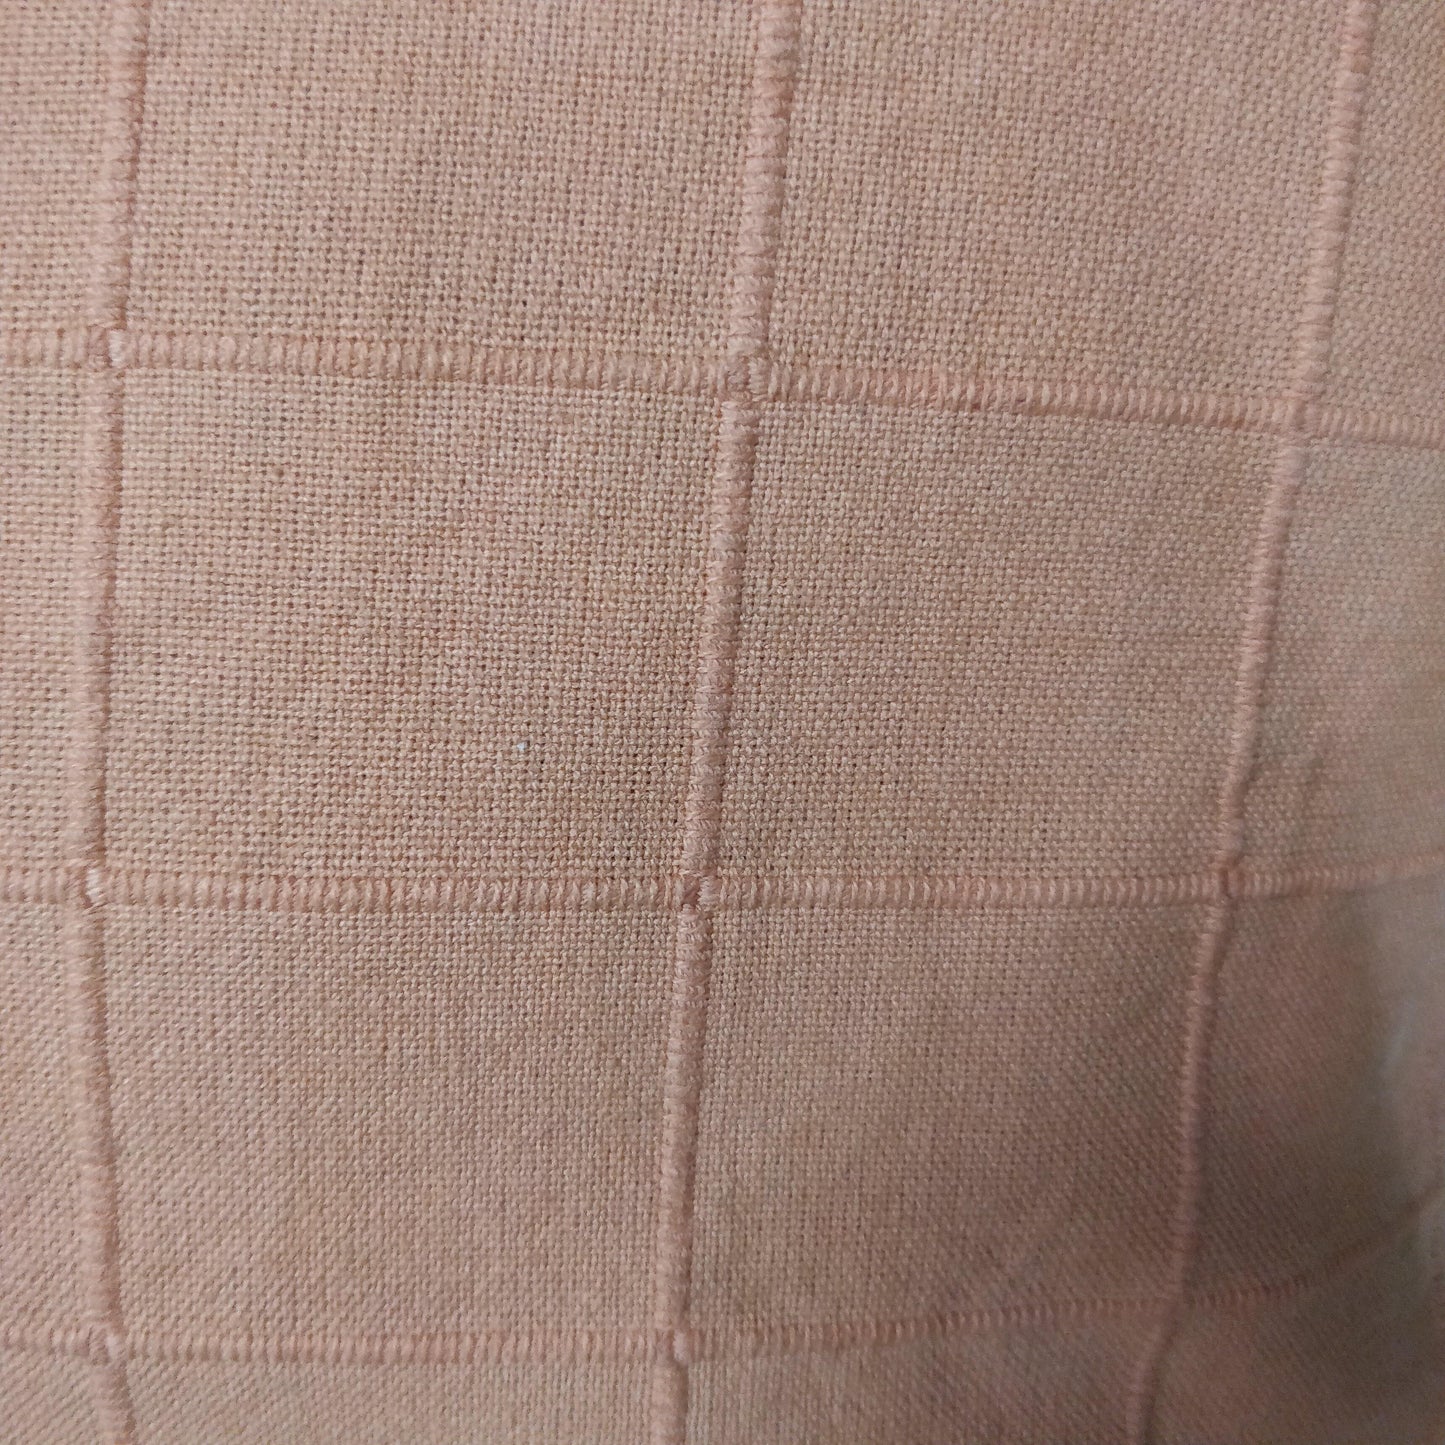 16" Checkered Thick Cushion Cover Pair - The Teal Thread